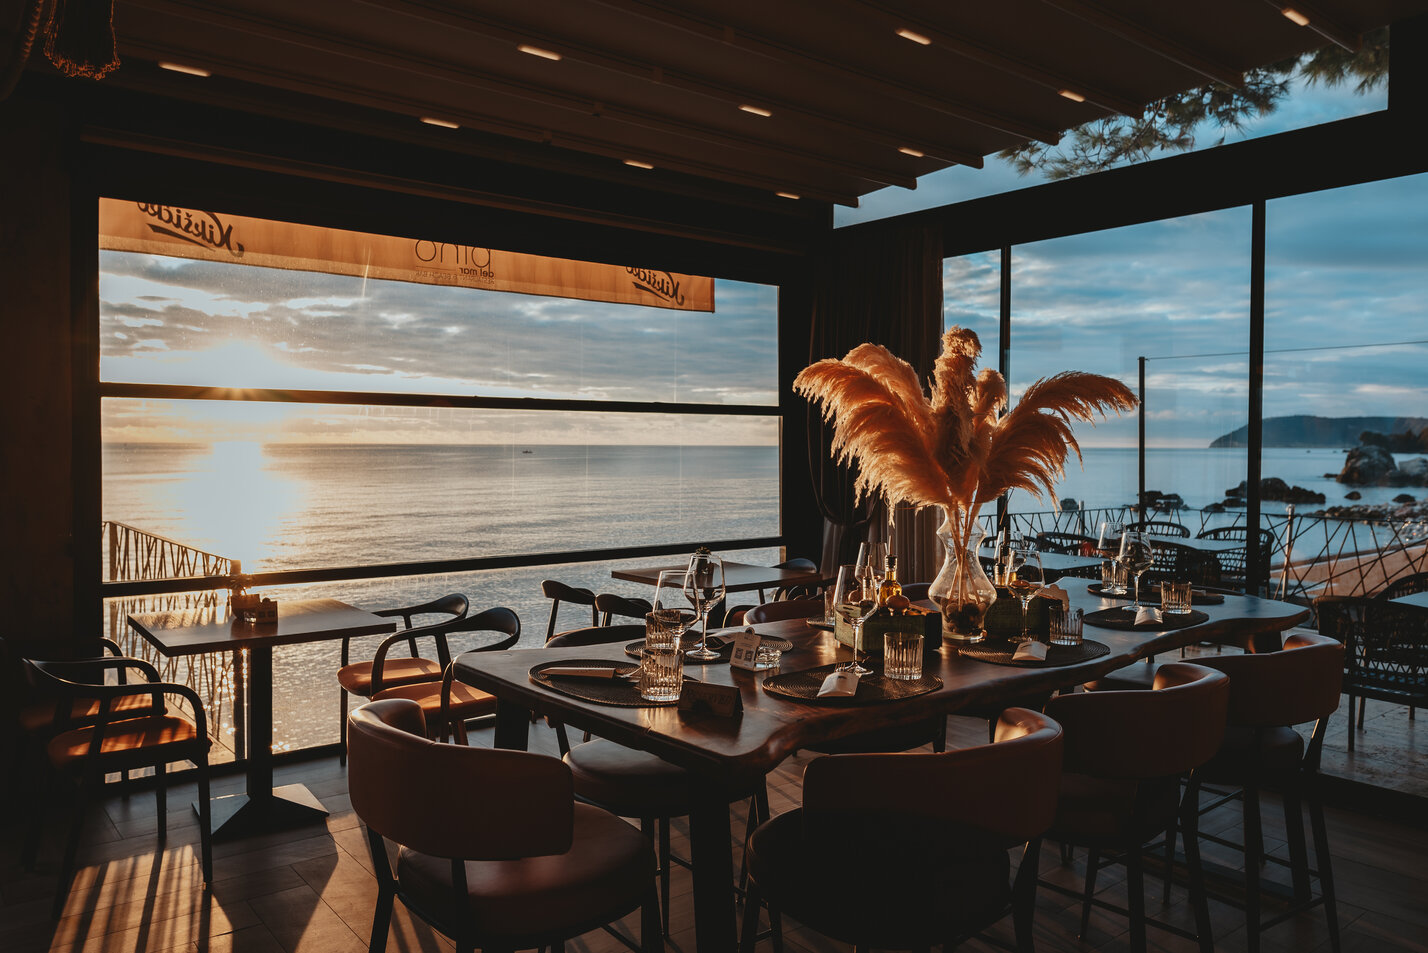 Pino del Mar Restaurant & Beach bar cover photo